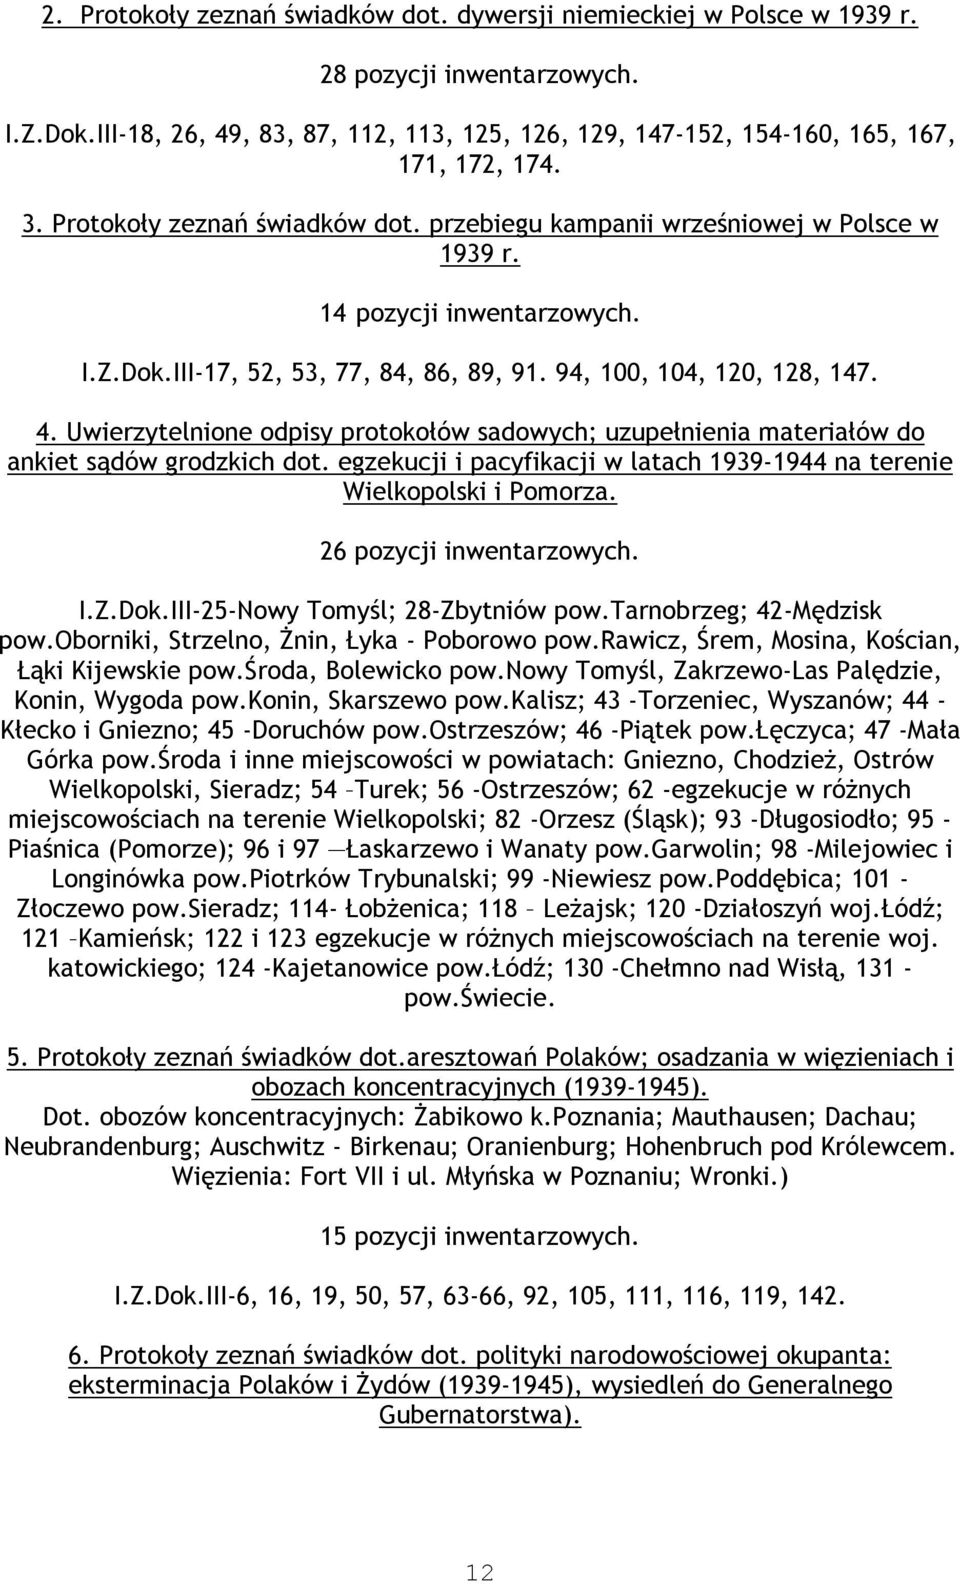 Uwierzytelnione odpisy protokołów sadowych; uzupełnienia materiałów do ankiet sądów grodzkich dot. egzekucji i pacyfikacji w latach 1939-1944 na terenie Wielkopolski i Pomorza.